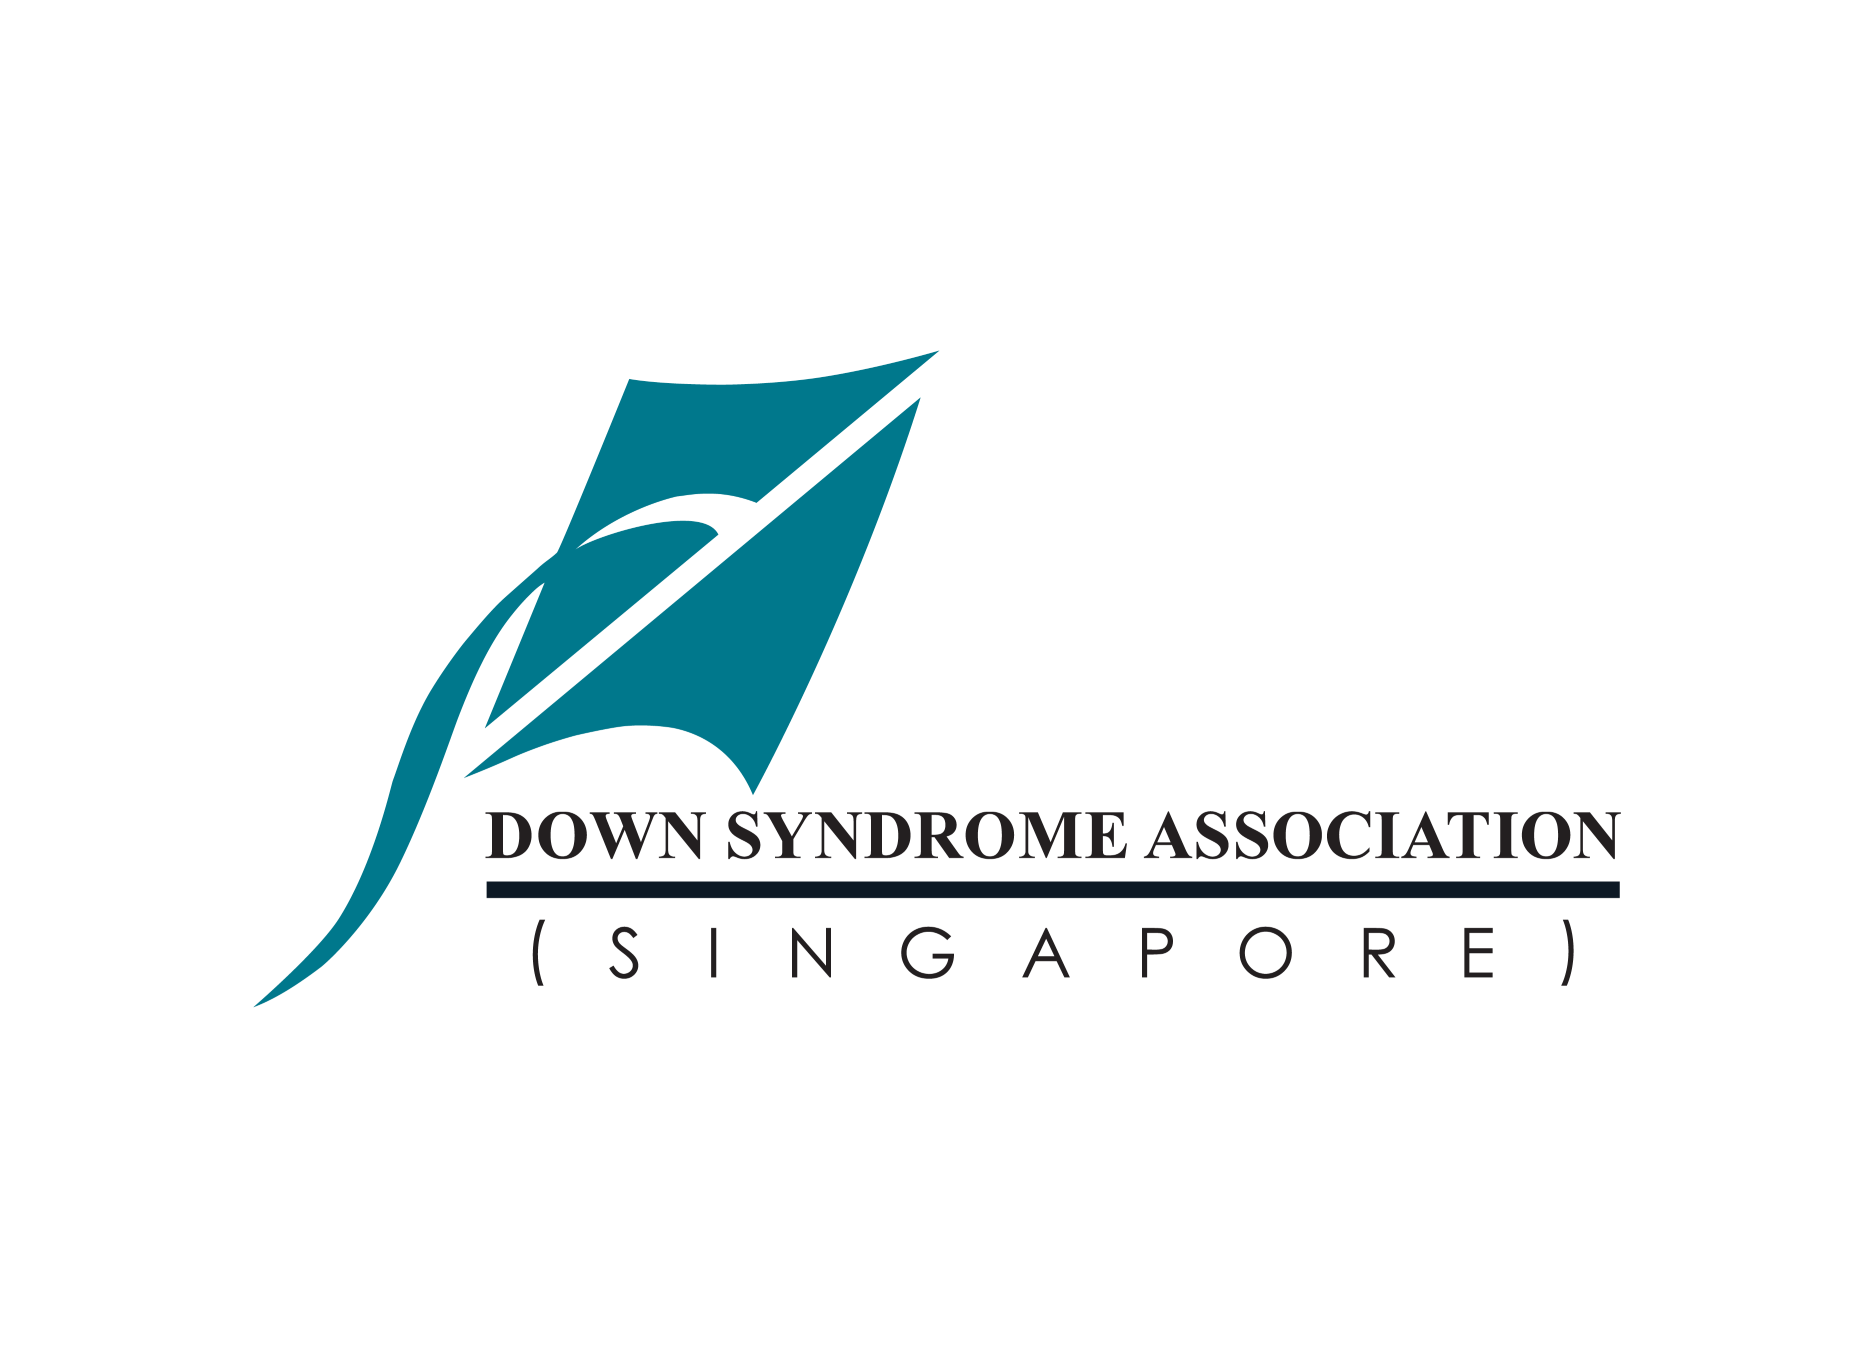 Down Syndrome Association (singapore) logo